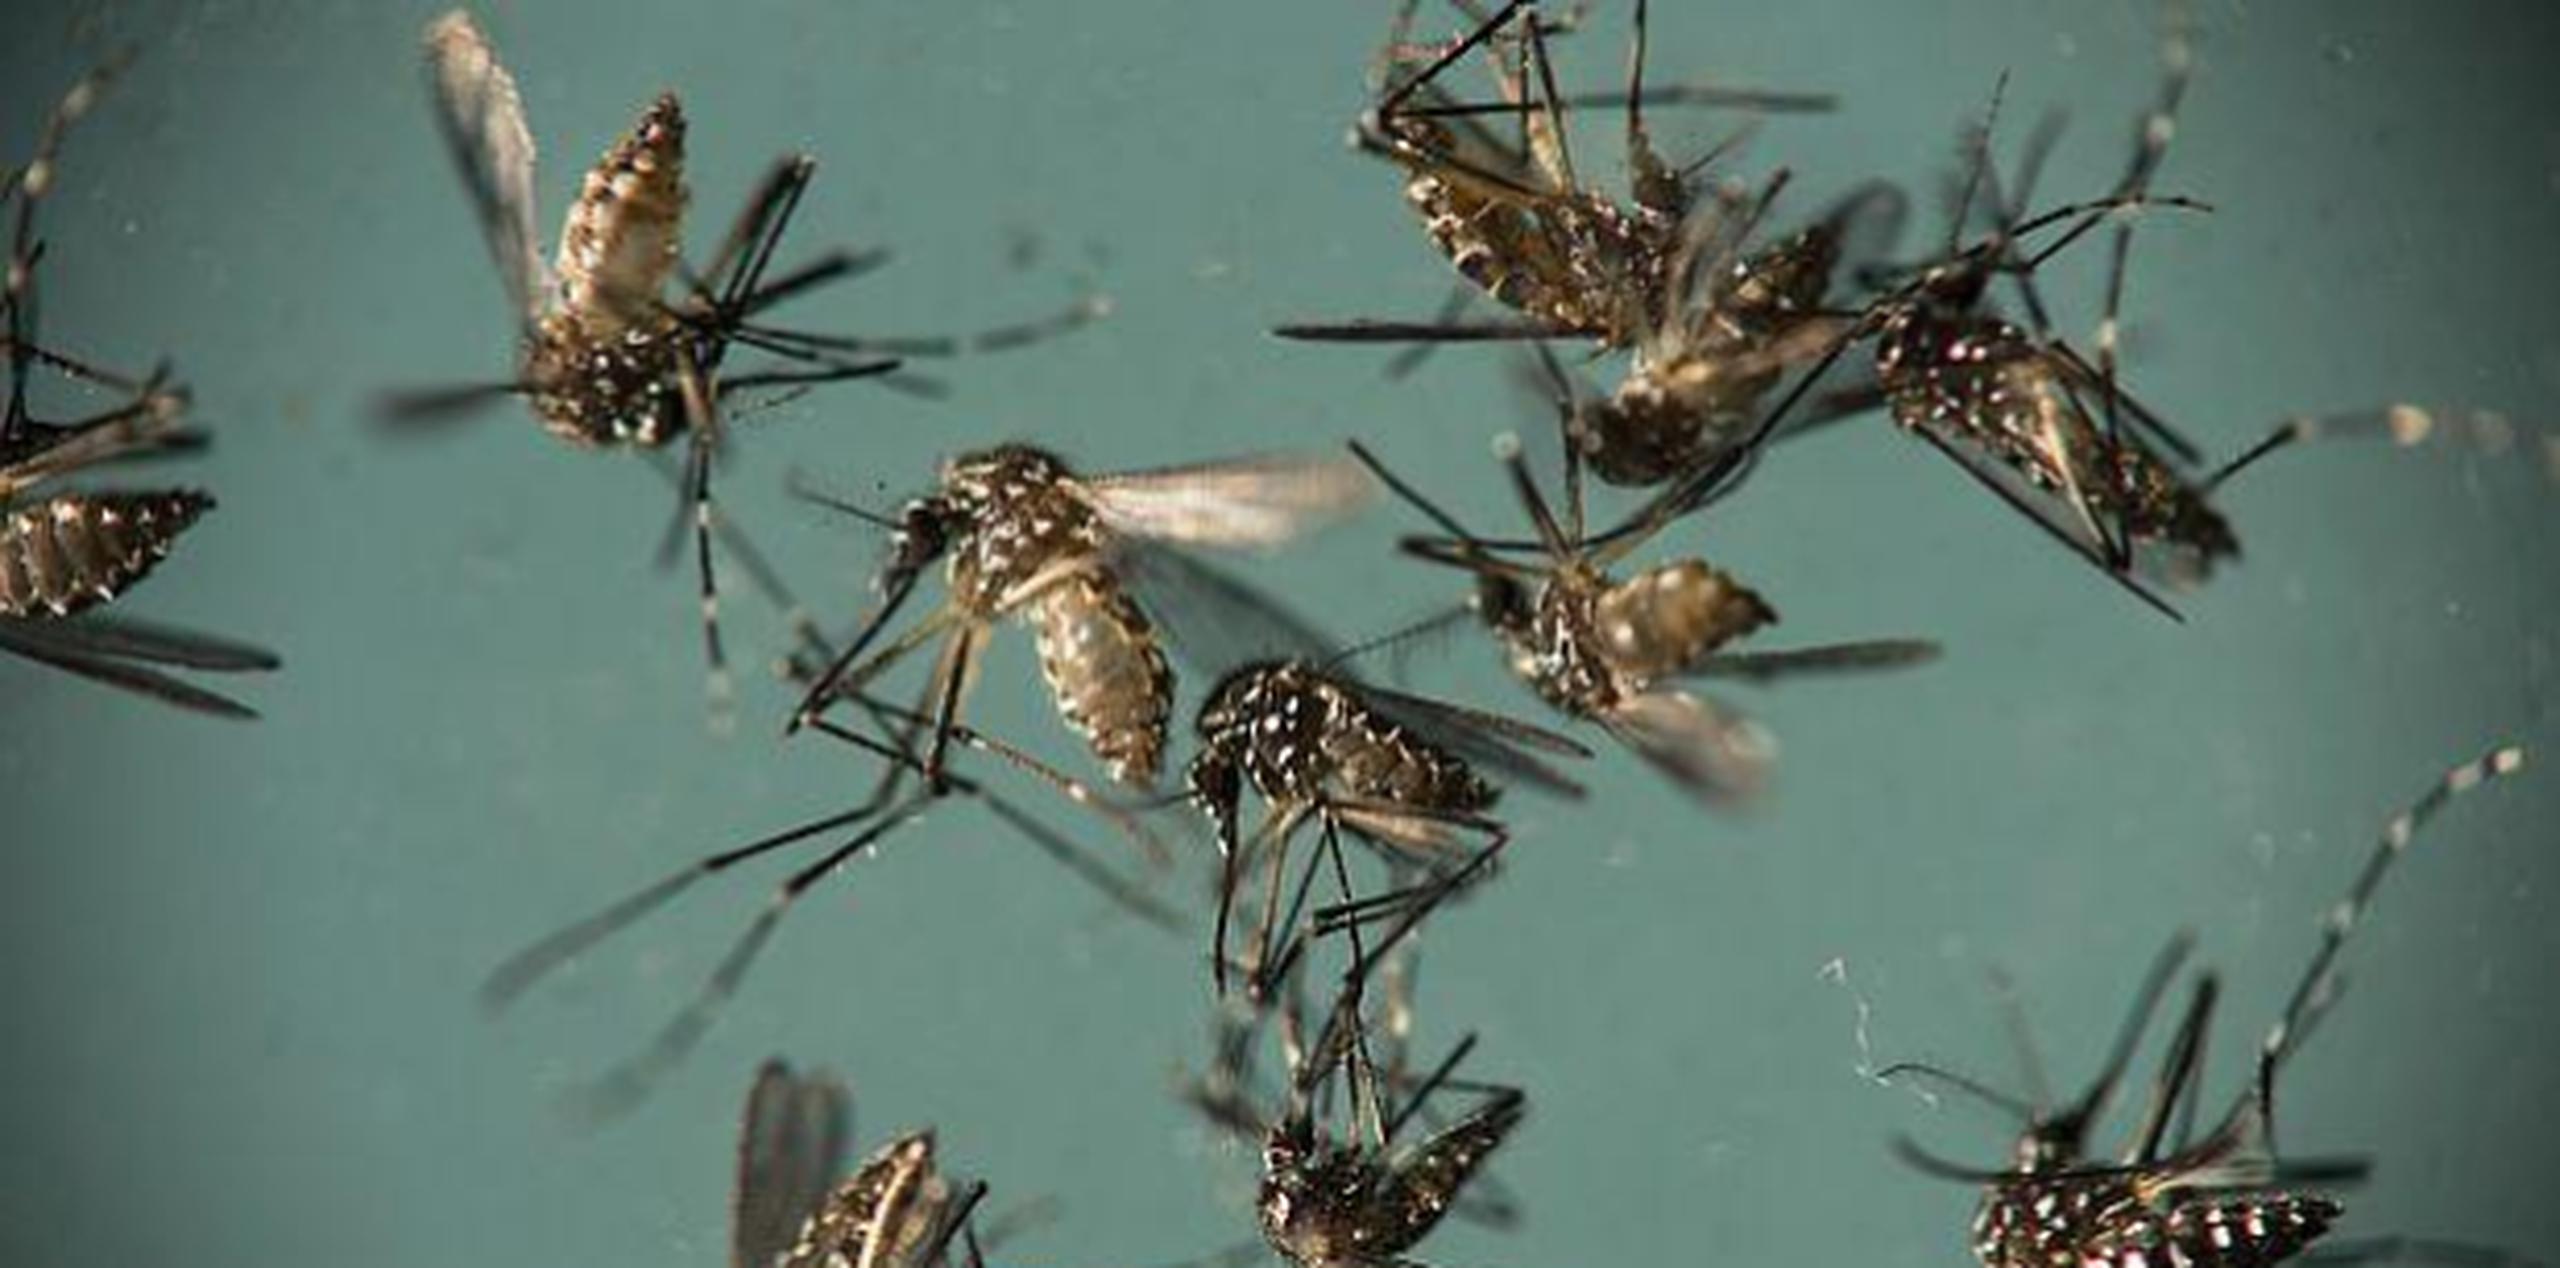 El zika se transmite principalmente por la picadura del mosquito 'Aedes aegypti'. (GDA)